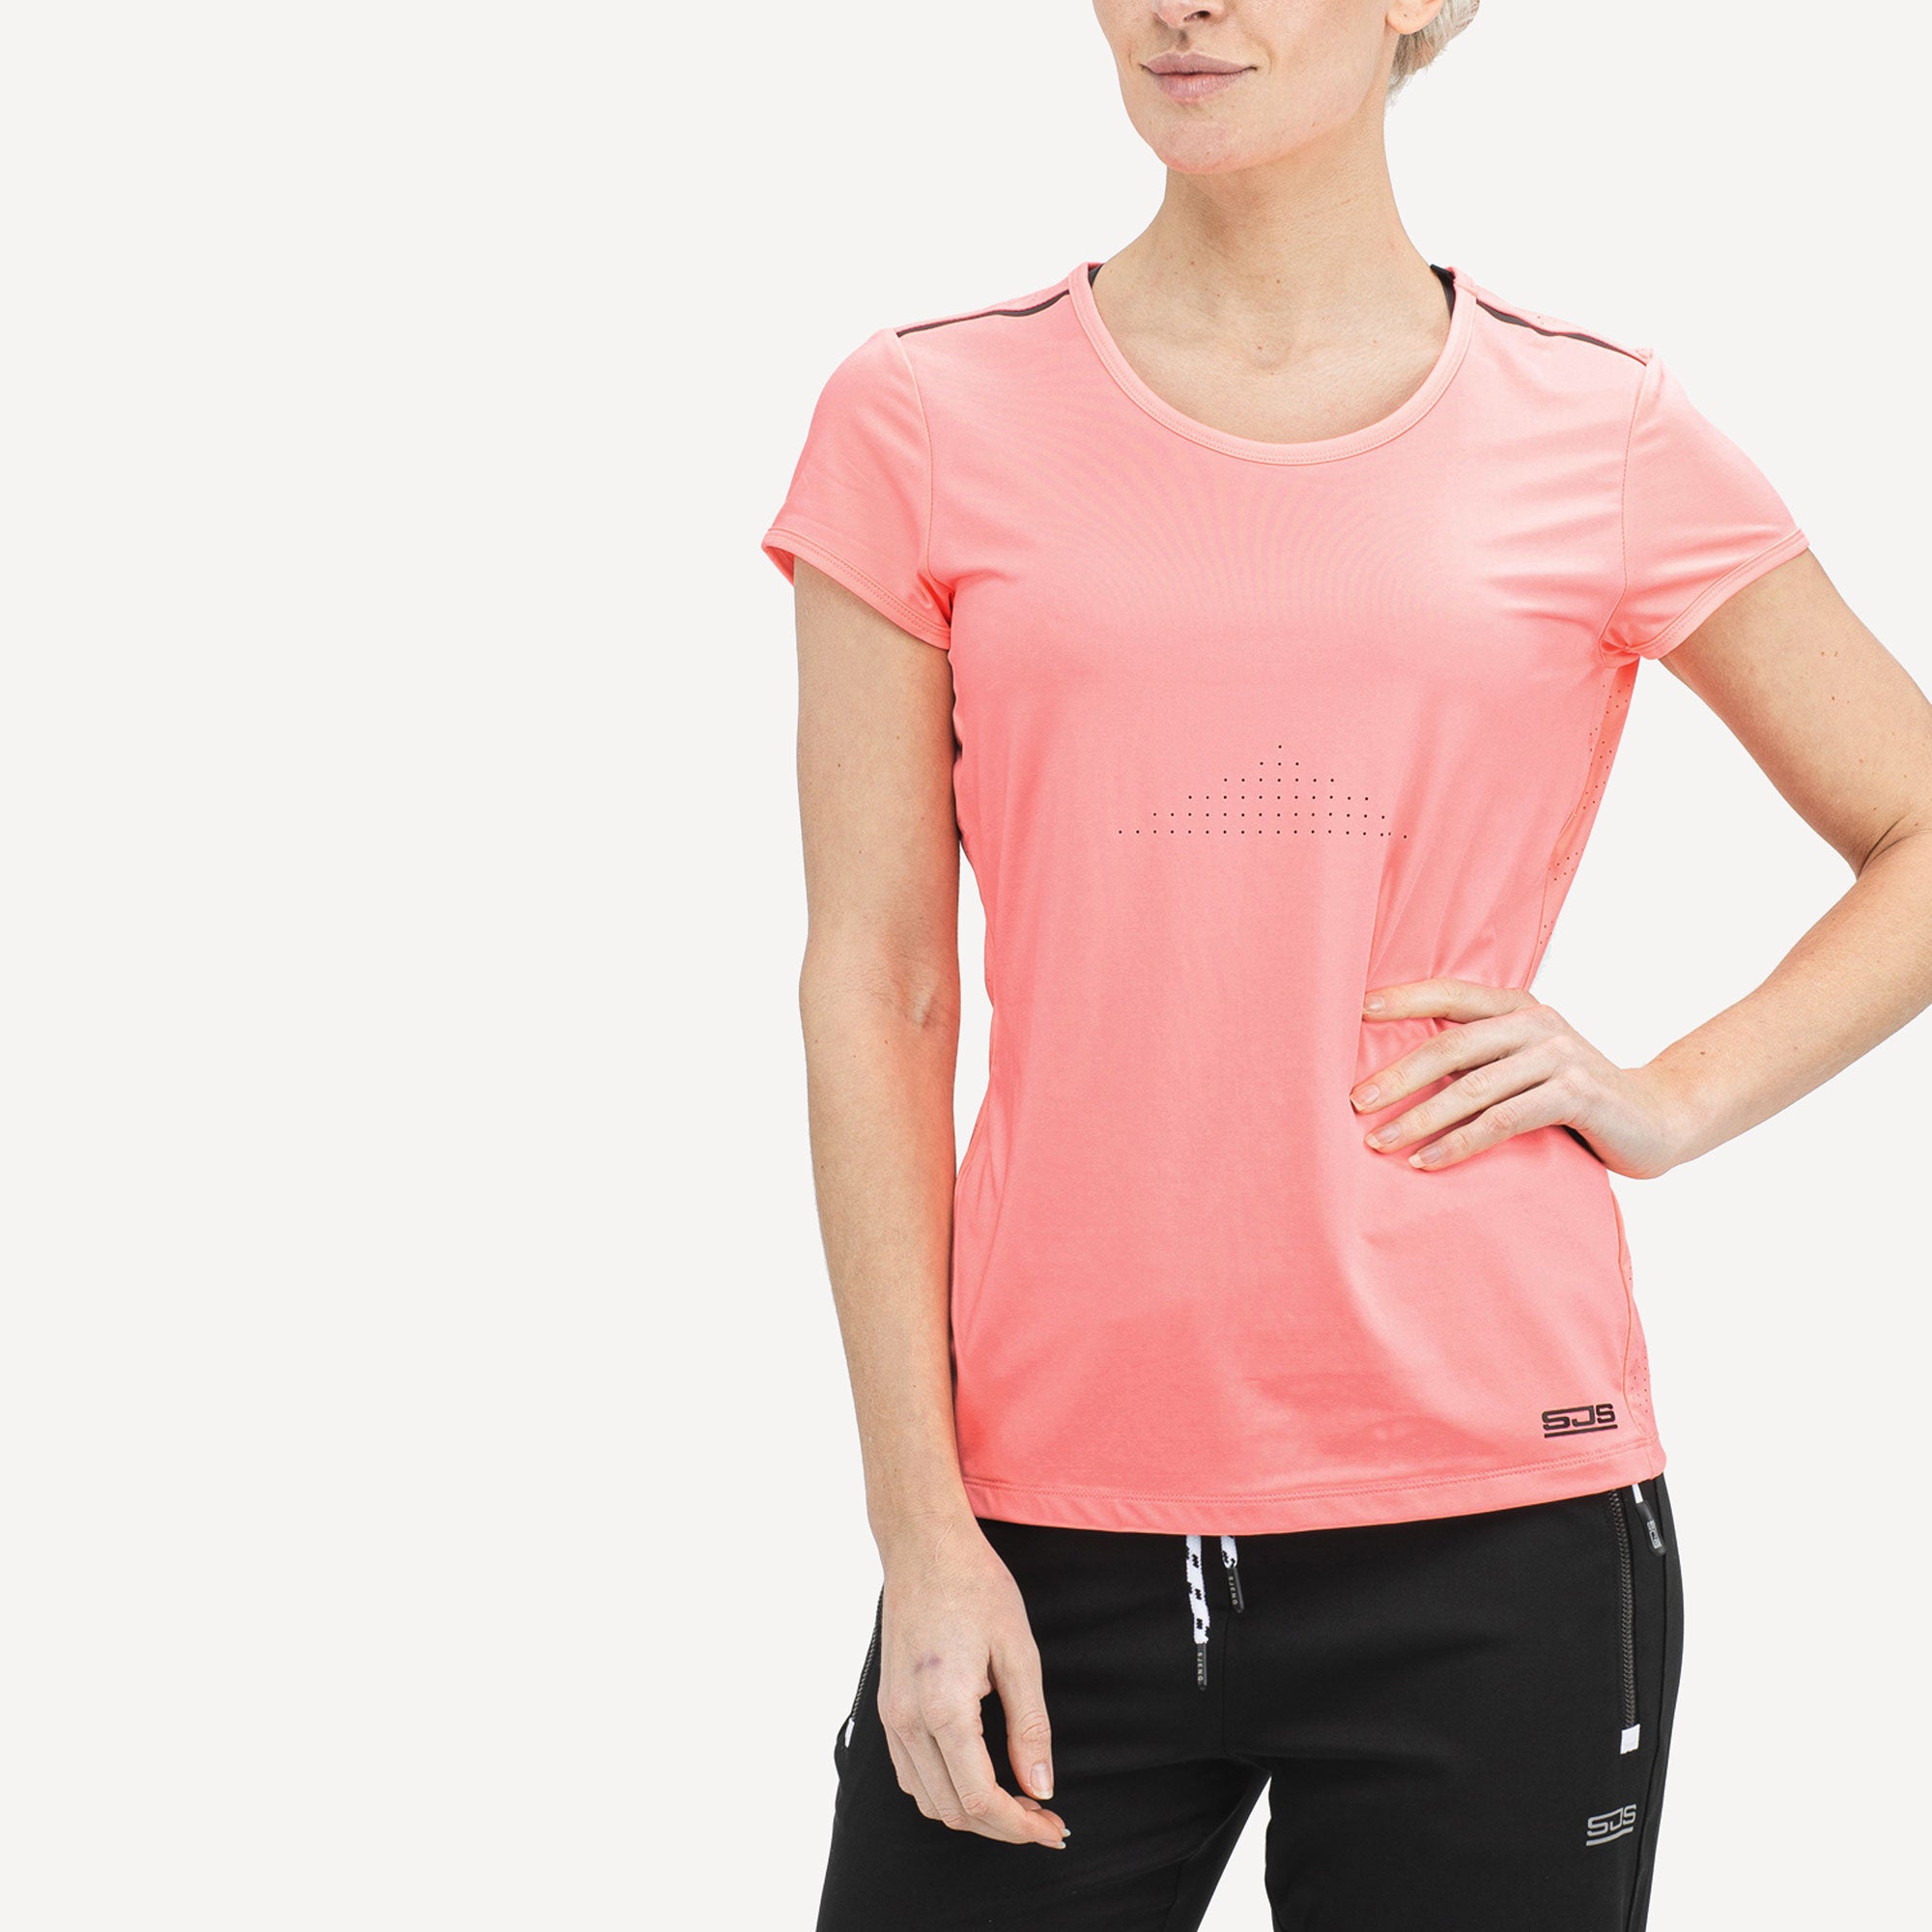 Sjeng Sports Ivy Women's Tennis Shirt Pink (1)